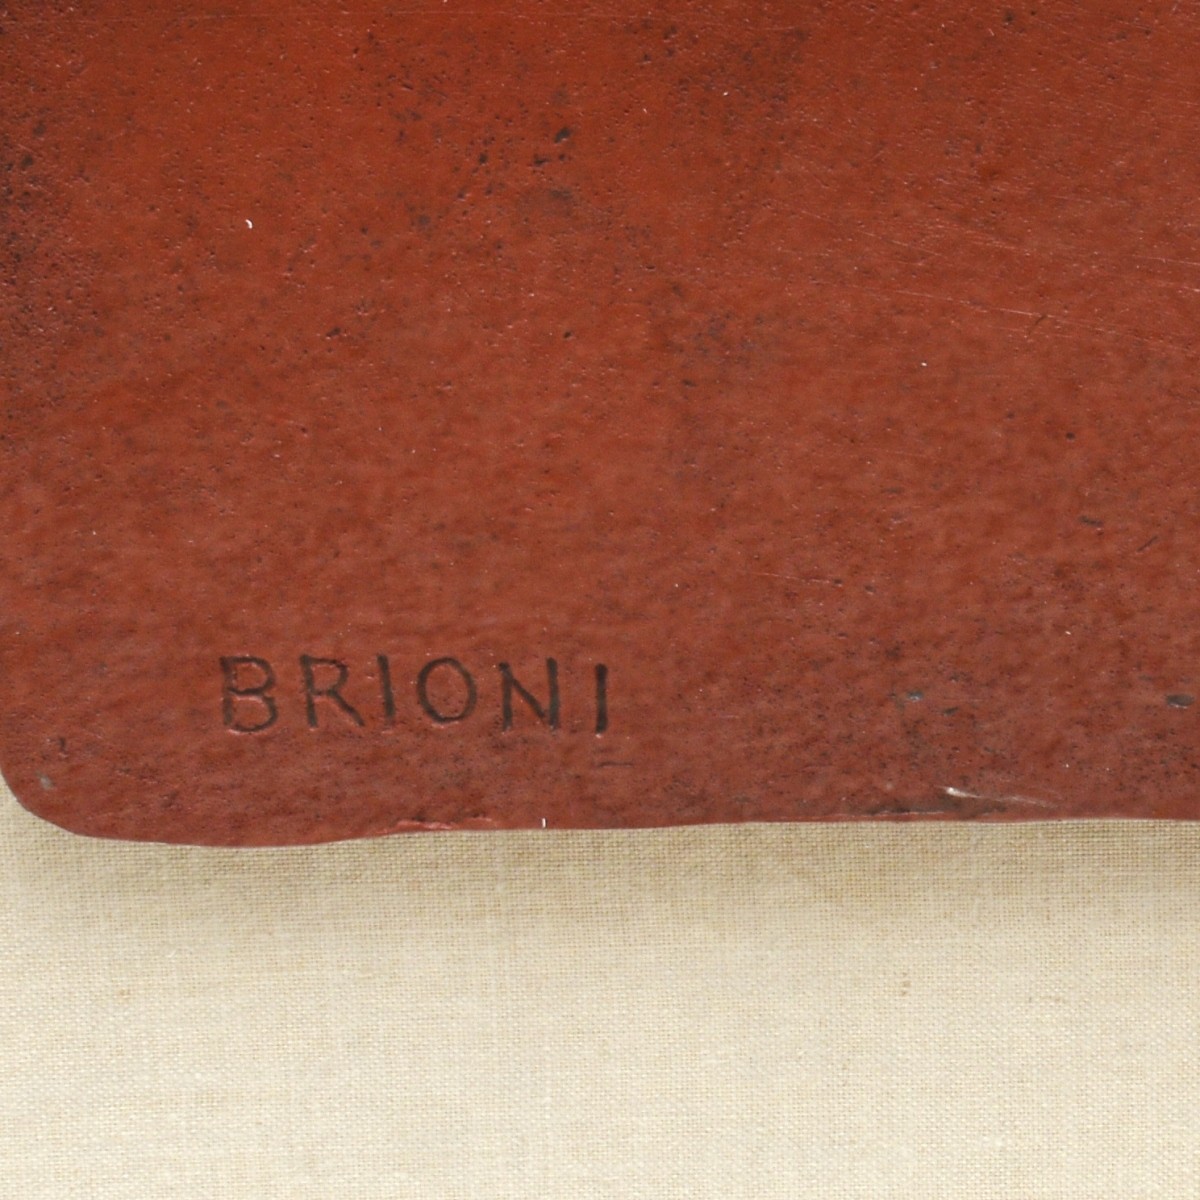 Brioni (20/21st Century)